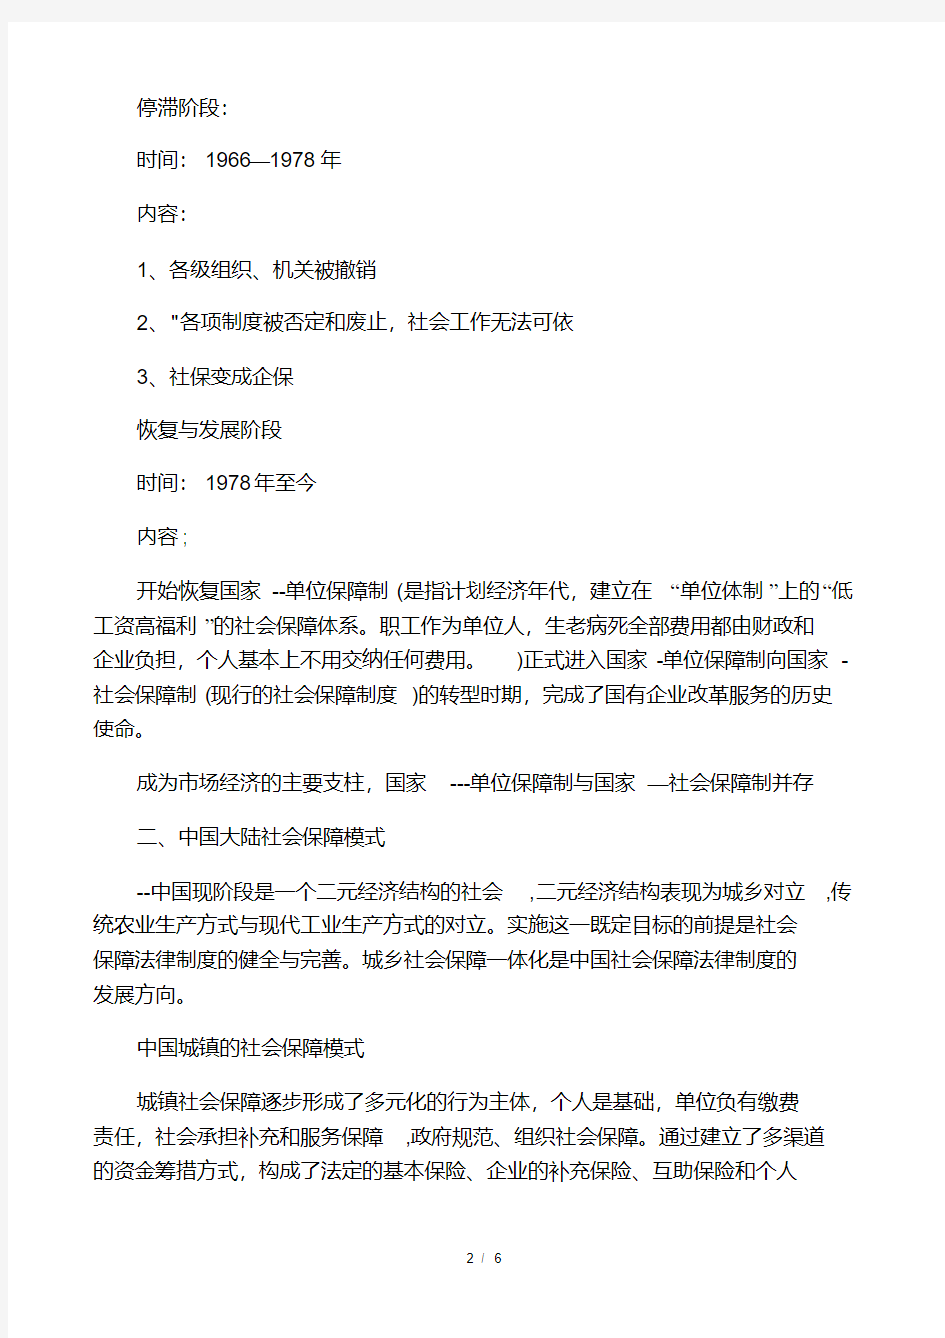 中国社会保障制度发展历程.pdf